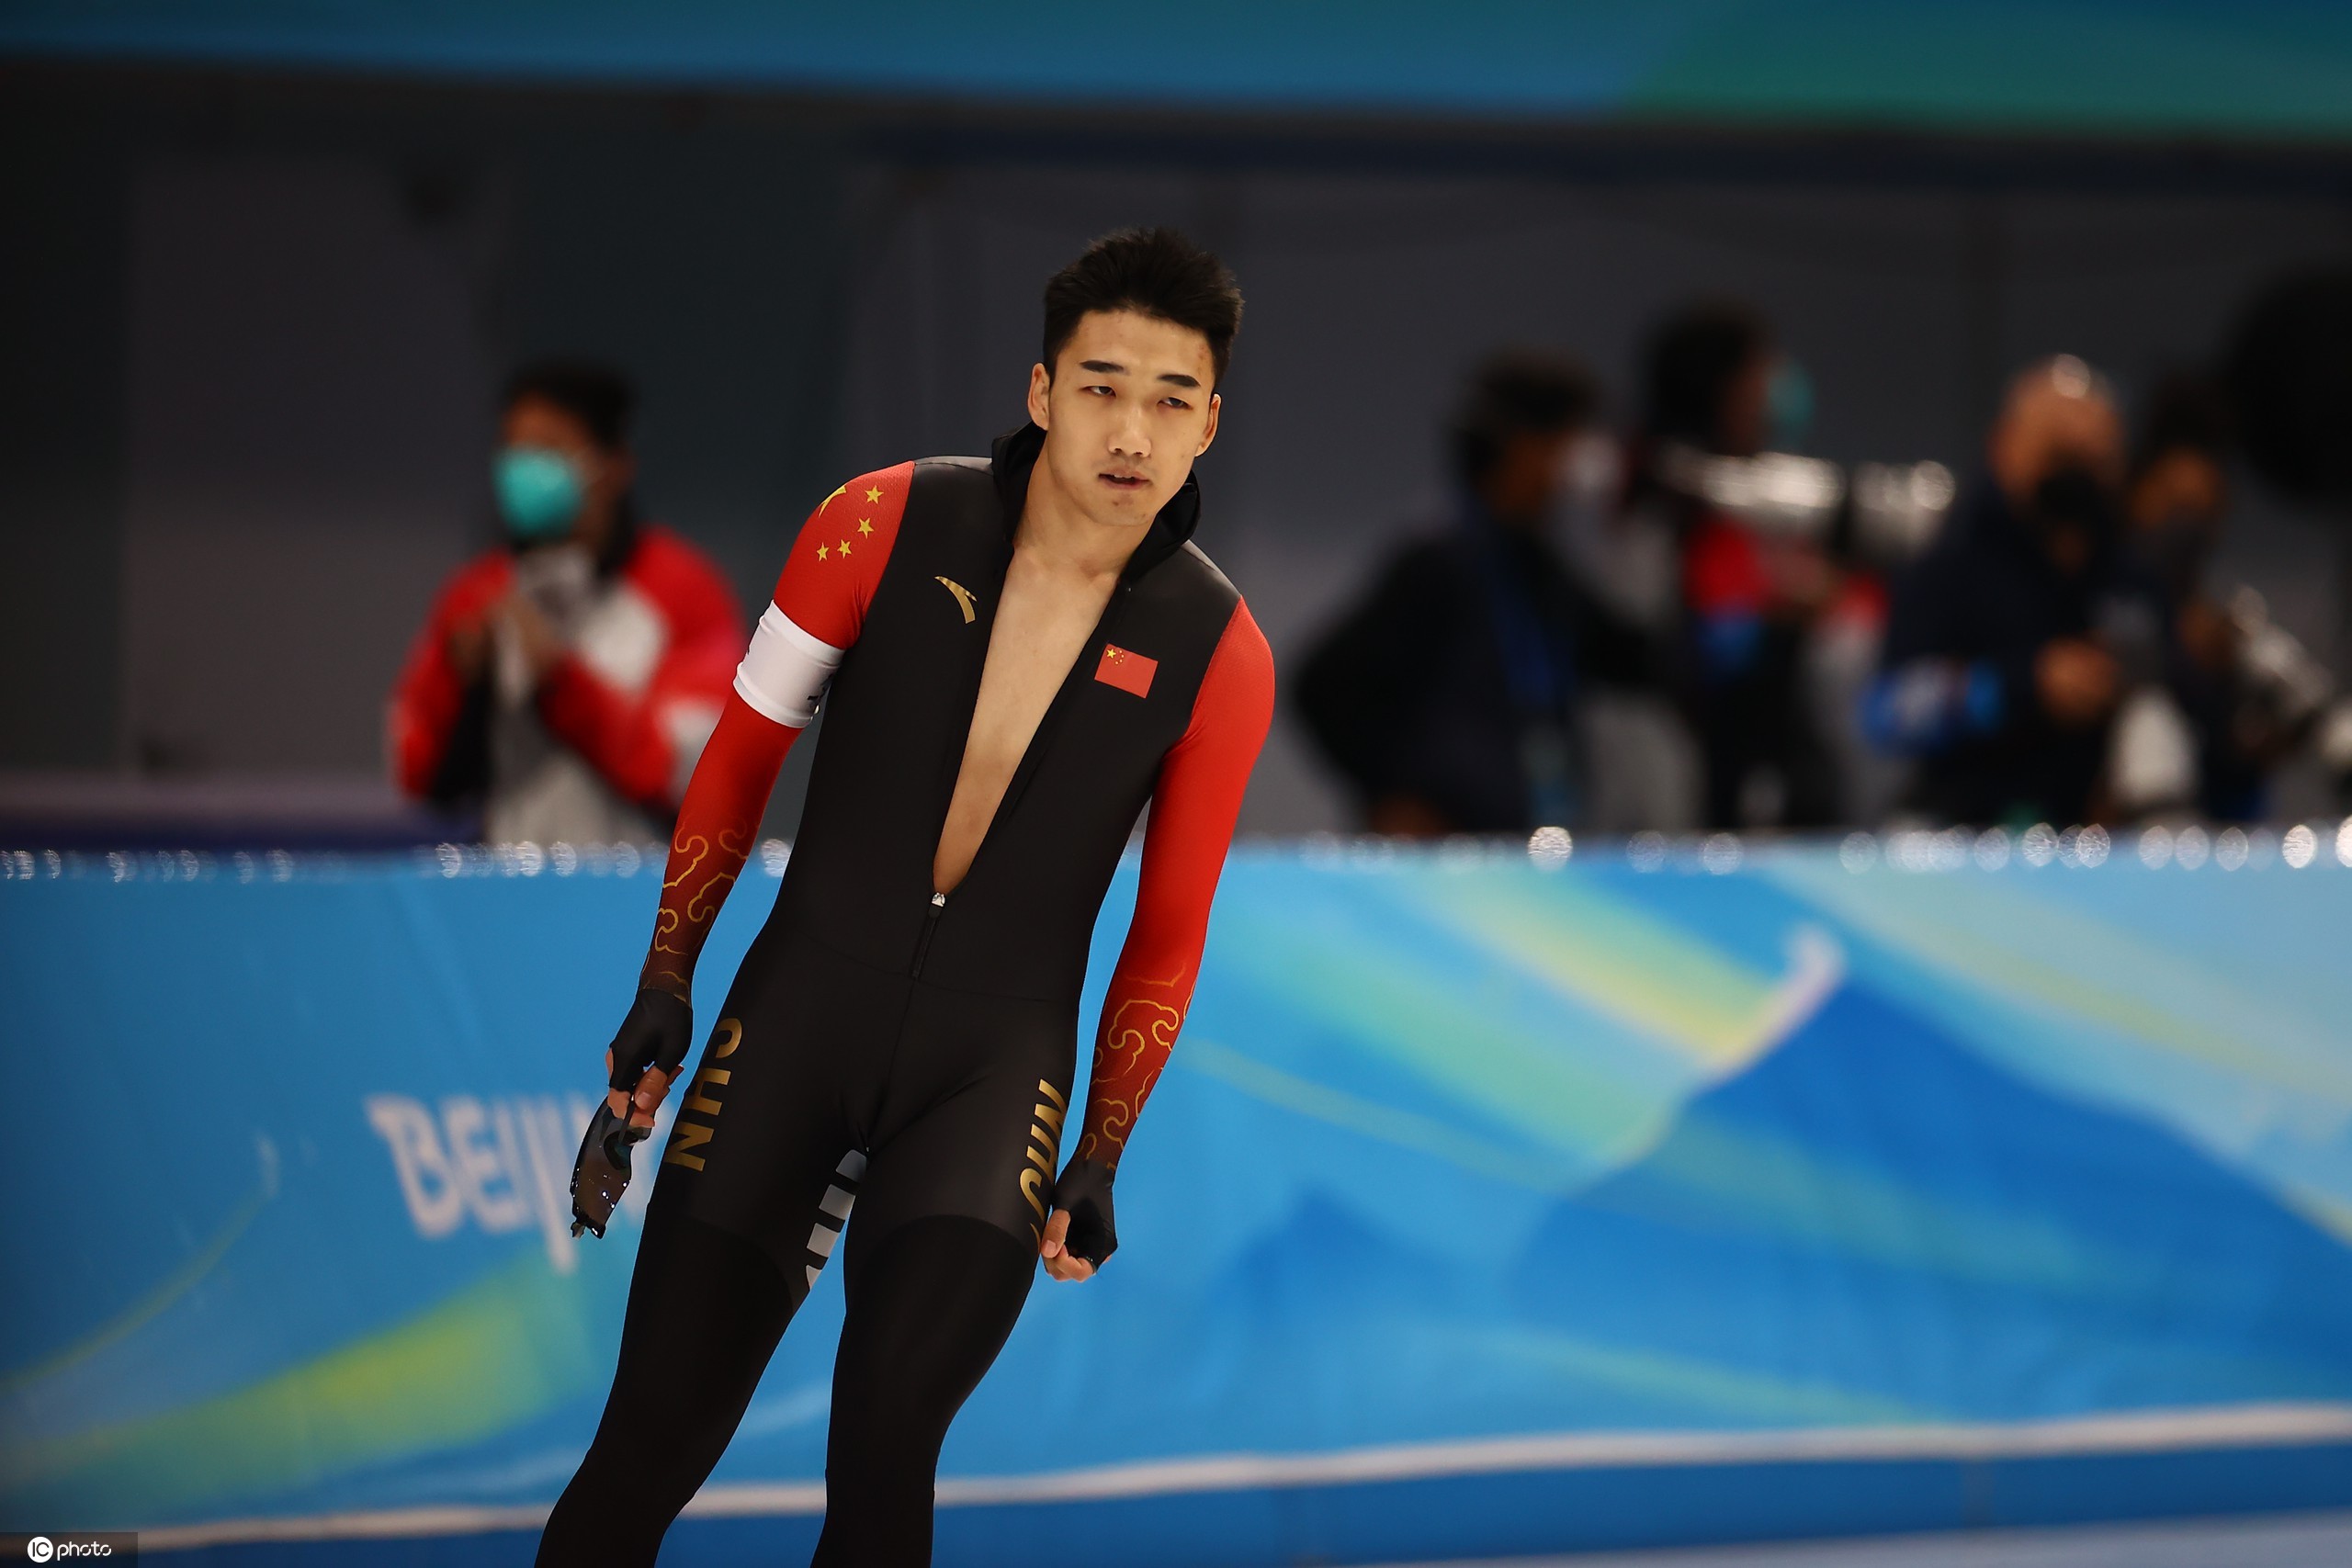 24 岁的高亭宇在男子500米a组第一次比赛夺冠,为中国速度滑冰队拿下